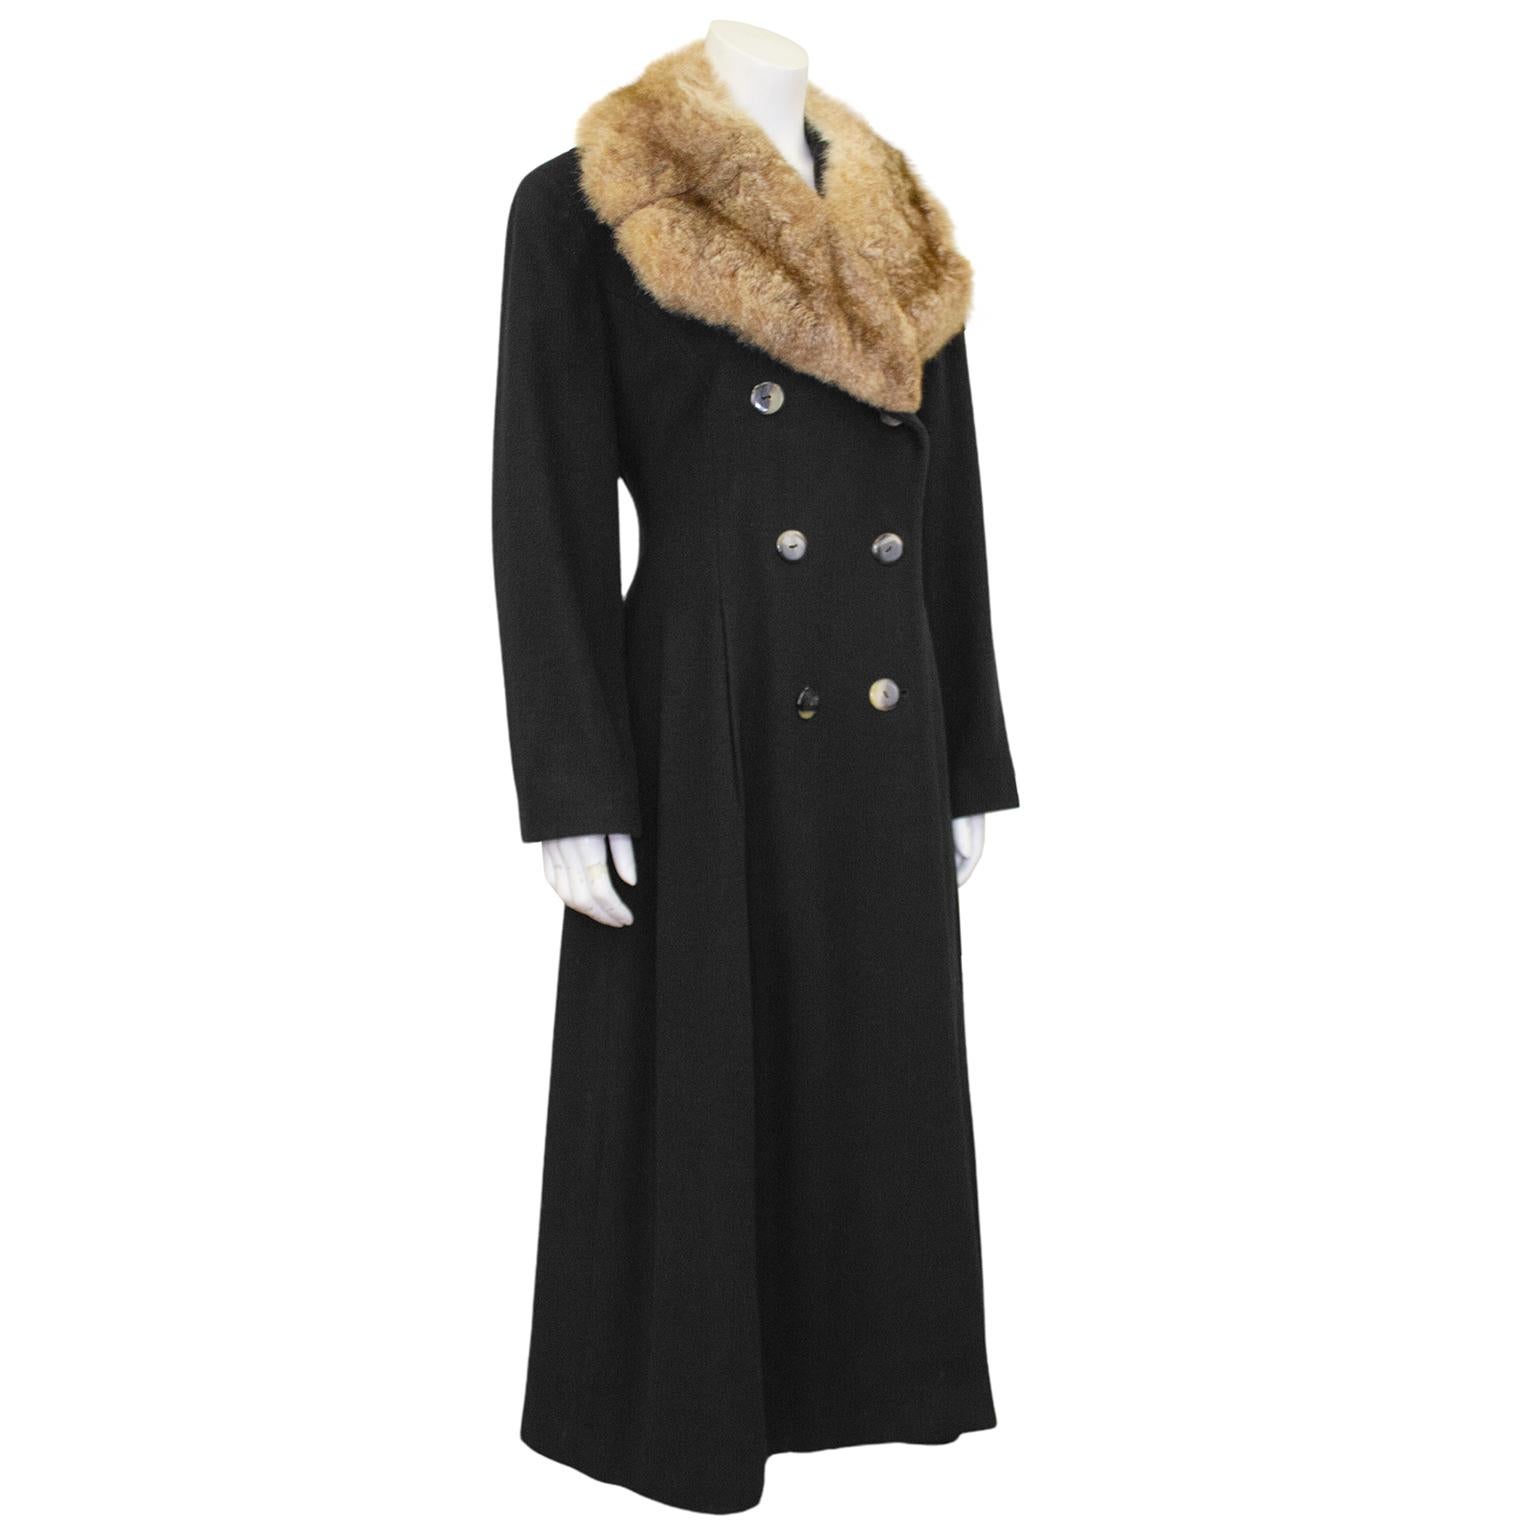 Le maxi manteau en laine noire avec col en fourrure de Perry Ellis, style princesse, date des années 1980, l'apogée de sa trop courte carrière. Ajusté à la taille, la fermeture à double boutonnage en fausse tortue, l'ampleur de la jupe et la